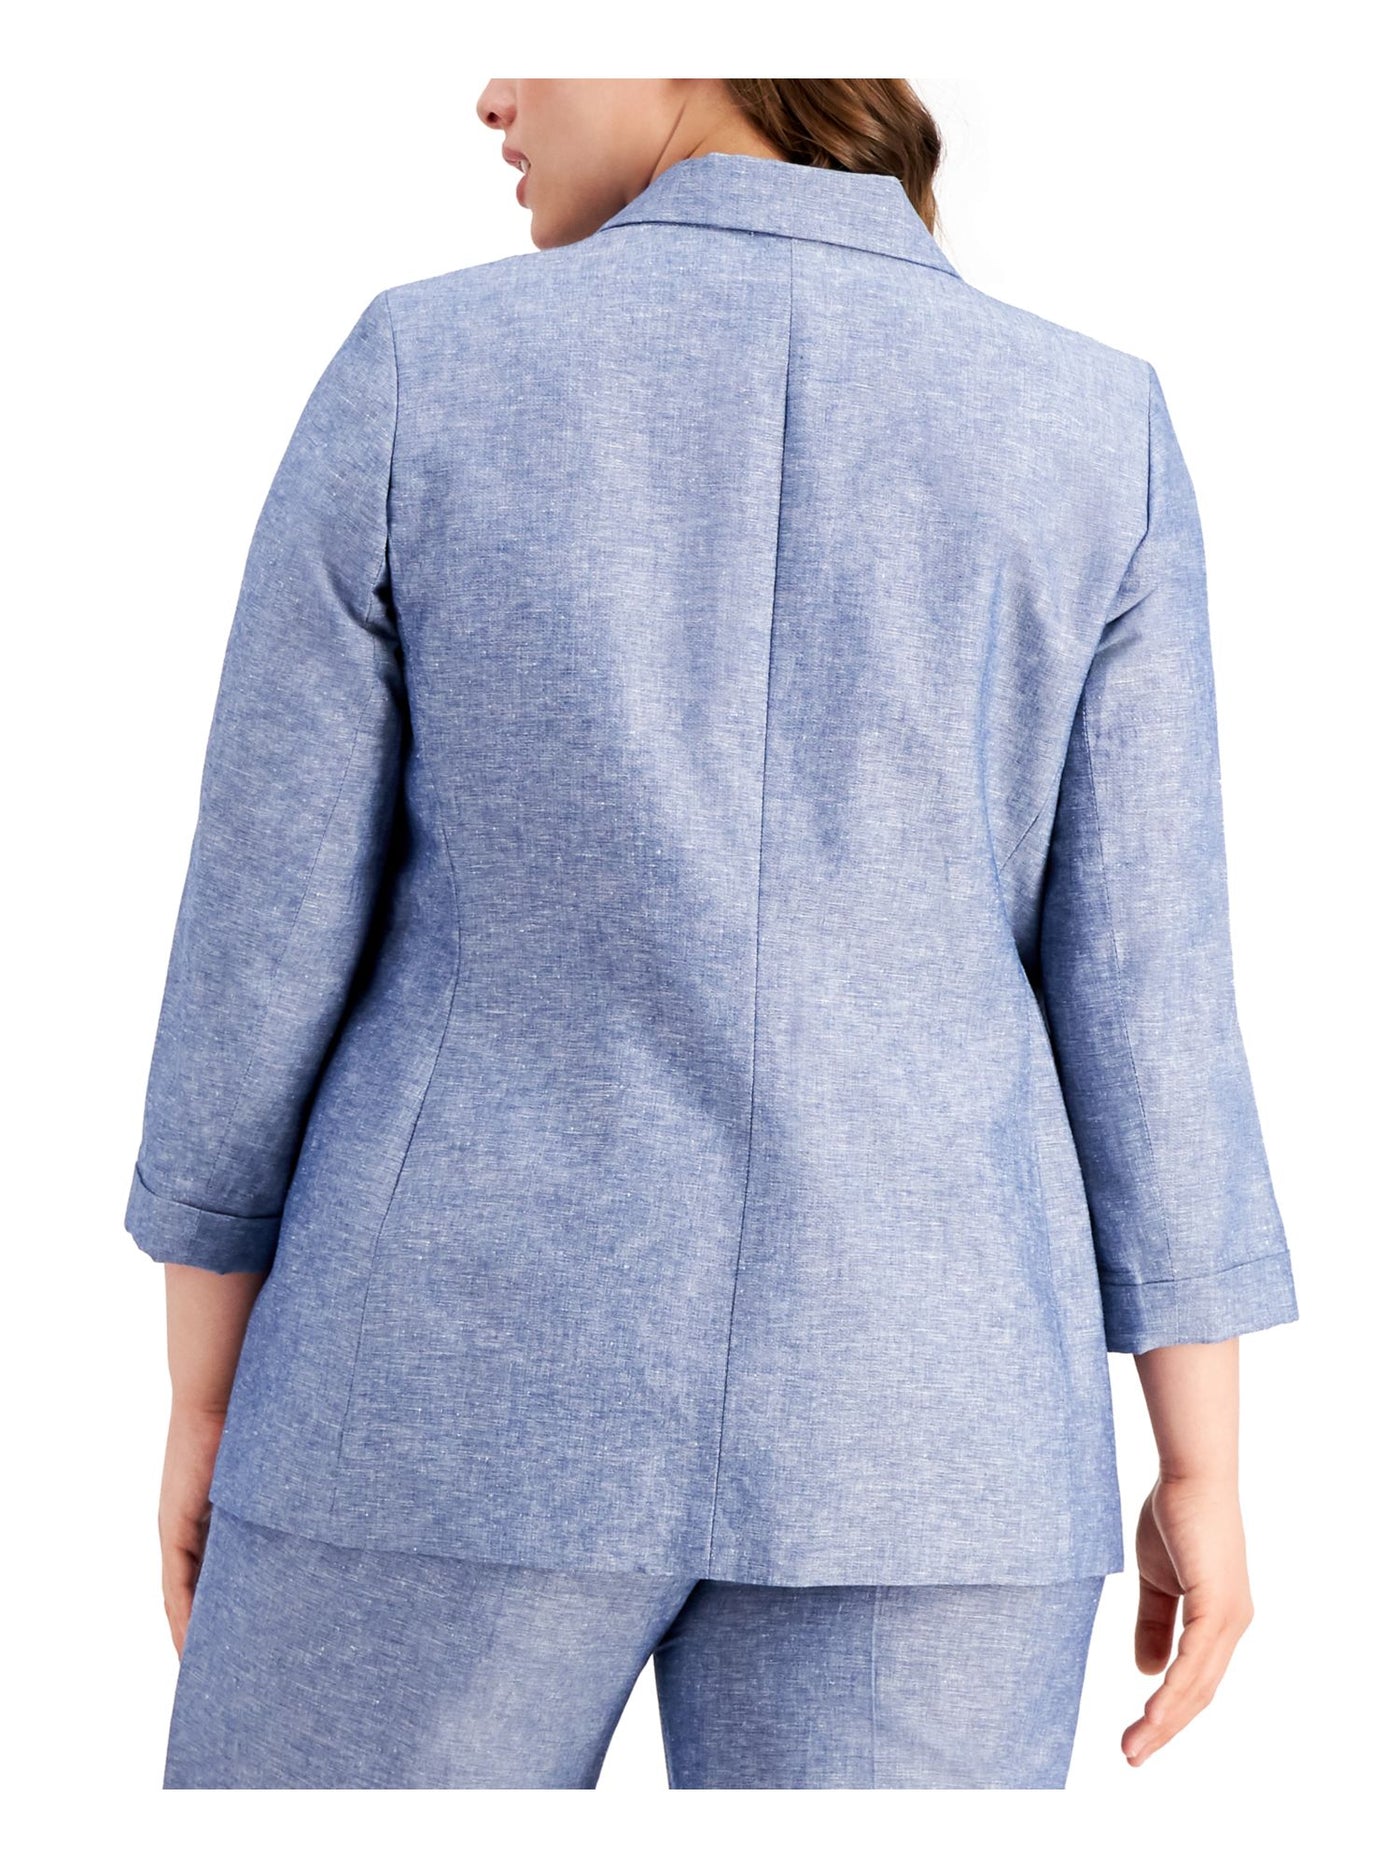 BAR III Womens Blue 3/4 Sleeve Wear To Work Blazer Jacket Plus 3X